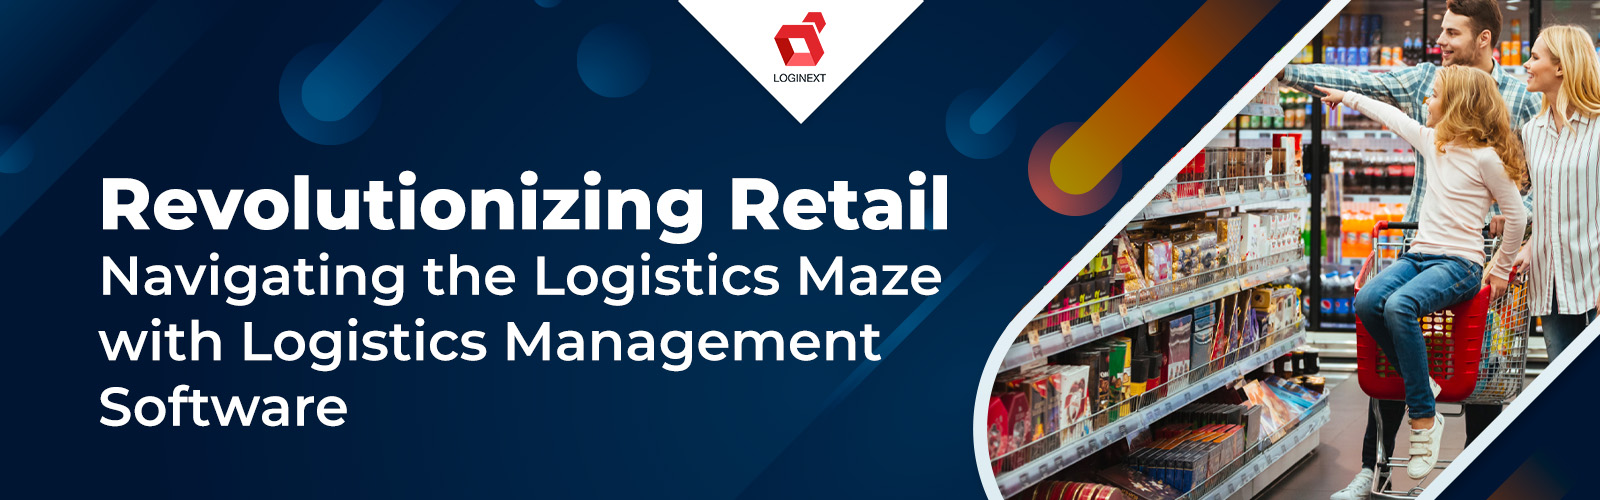 Logistics Management Software- Retail Case Study